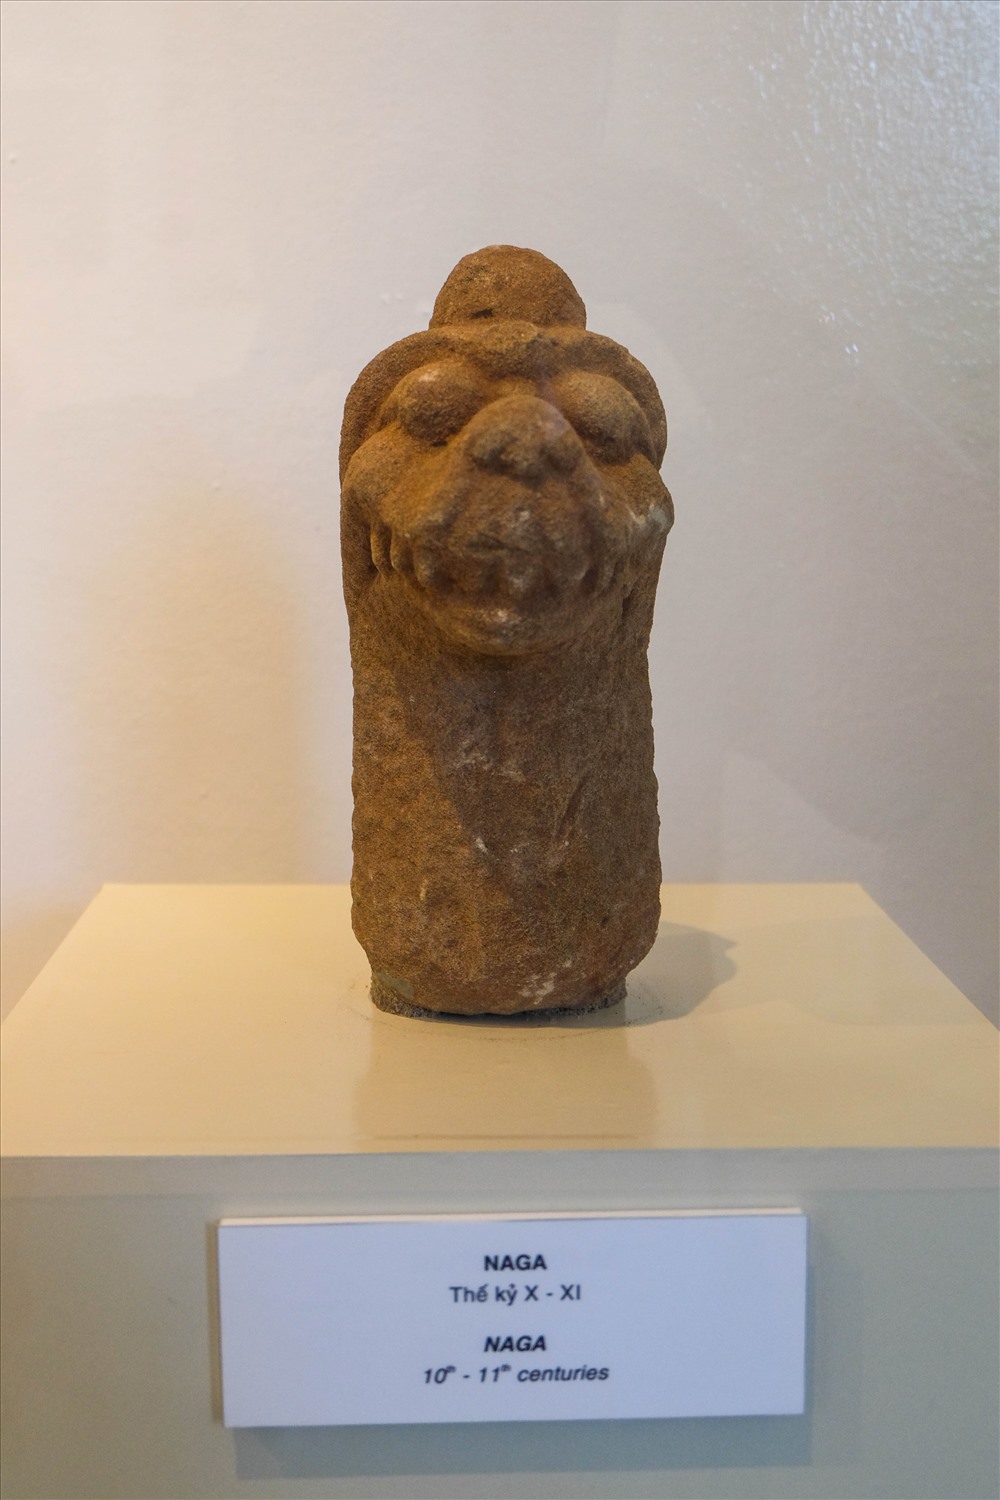 Đây là các hiện vật được Bảo tàng điêu khắc Chăm Đà Nẵng phối hợp với Trường ĐH KHXHNV Hà Nội thực hiện 3 đợt khai quật trong giai đoạn 2011 - 2018 tại di tích tháp Chăm Phong Lệ thu được.